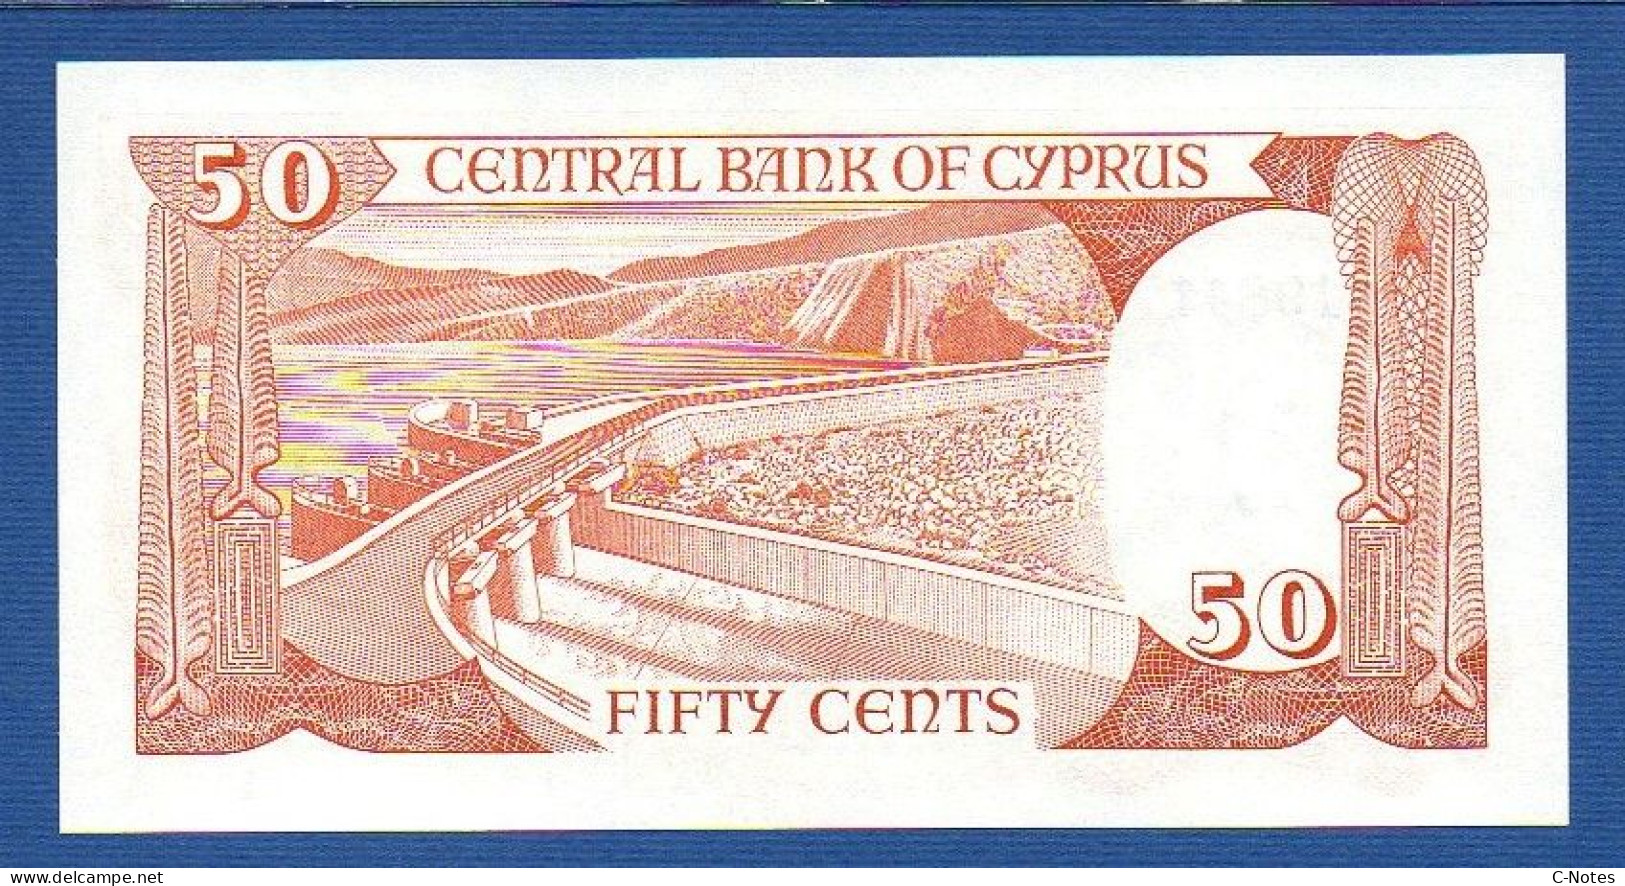 CYPRUS - P.52 – 50 Cents / Sent 1.11.1989 UNC, S/n T198417 - Chipre